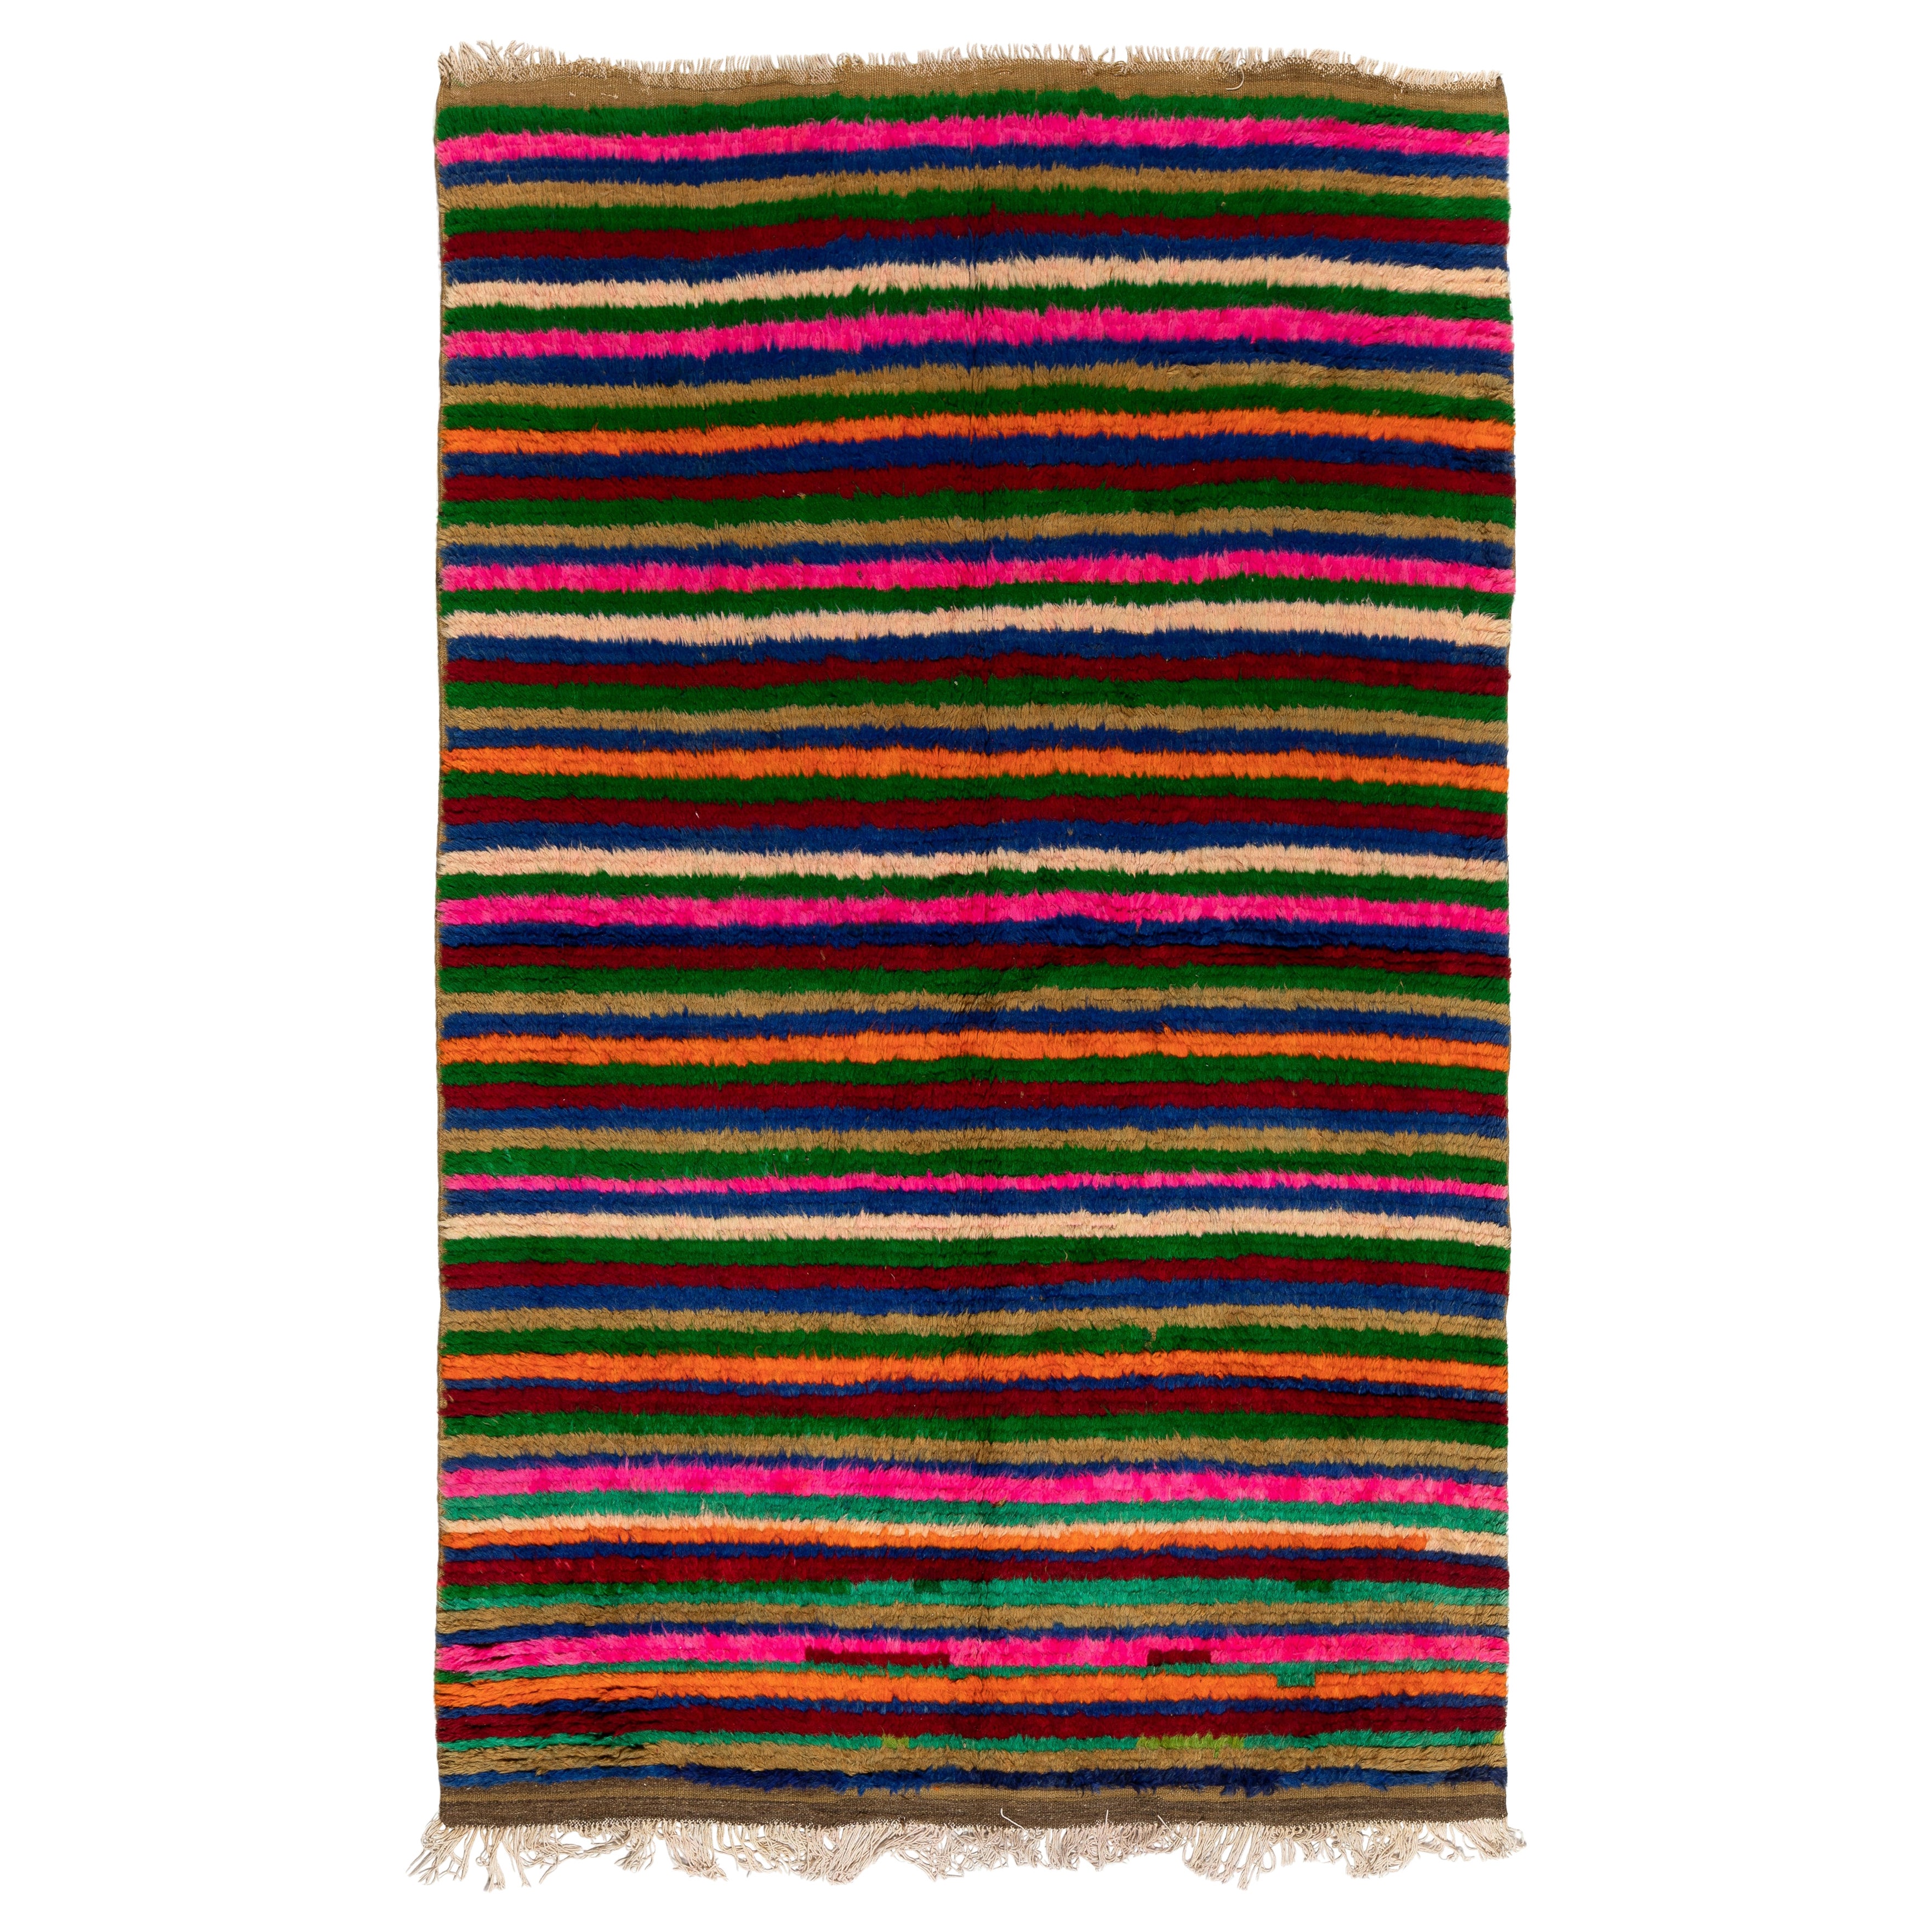 5.5x8.4 Ft Multicolored Vintage Handmade Turkish Banded Tulu Rug, Soft Wool Pile